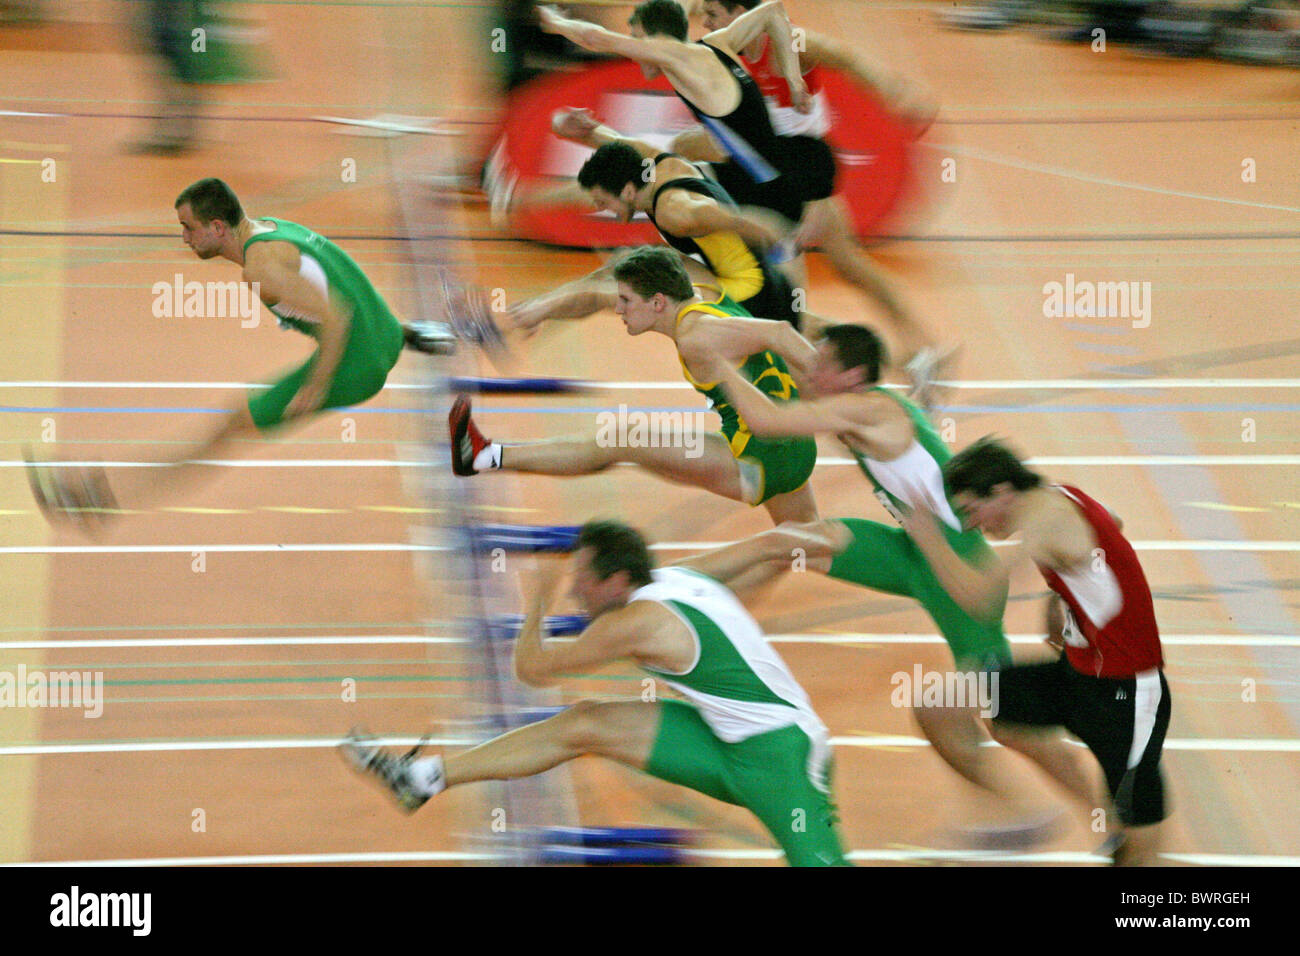 Sauts athlétisme haies course sports athlètes du groupe sprint hommes saut en Suisse Europe Banque D'Images